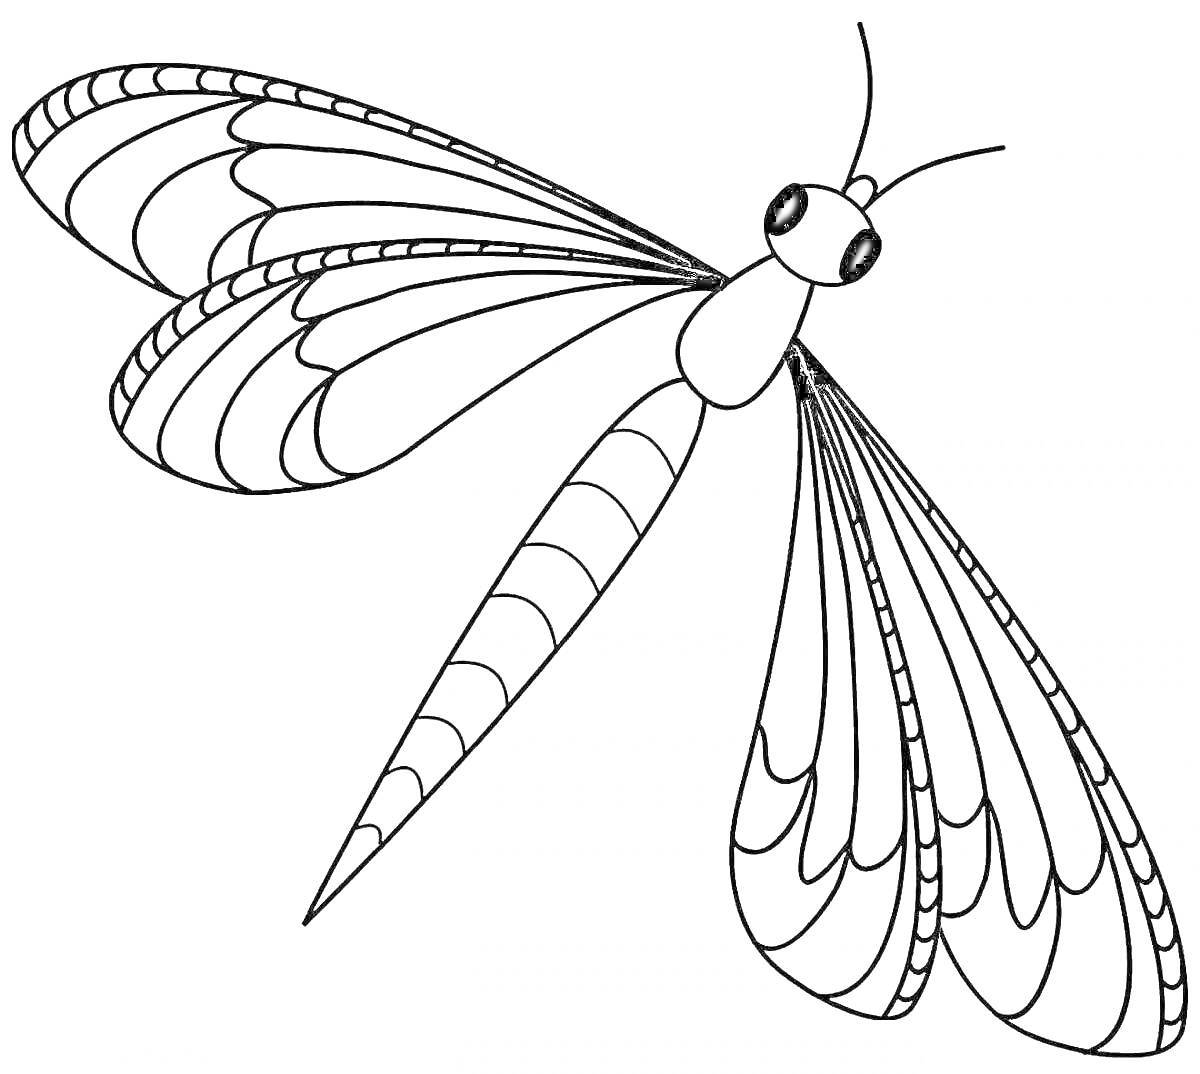 Раскраска Стрекоза с длинным телом и узорчатыми крыльями